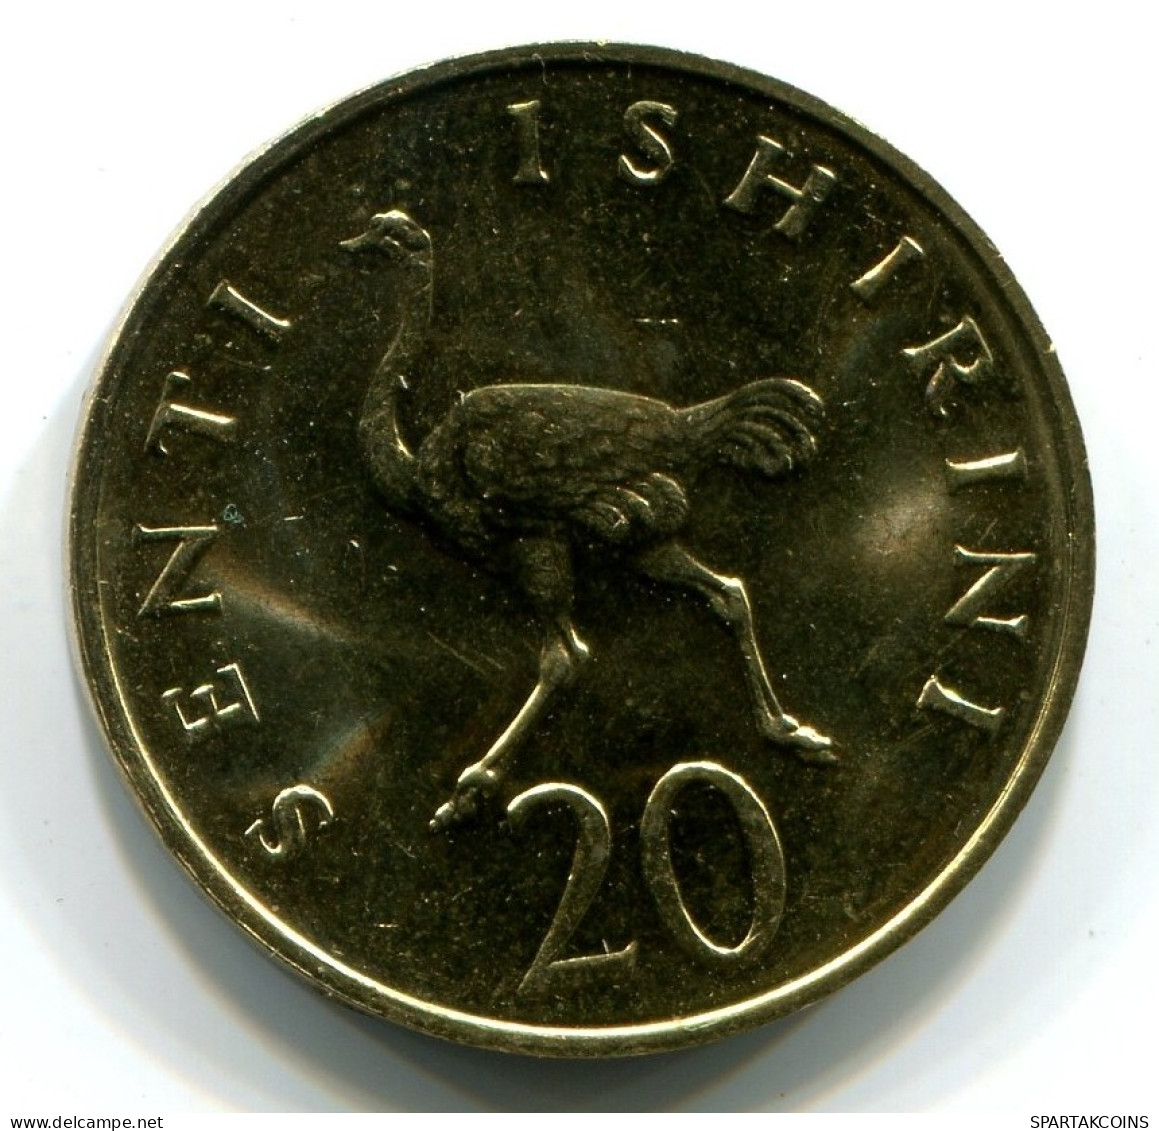 20 SENTI 1981 TANZANIA UNC Ostrich Coin #W11037.U.A